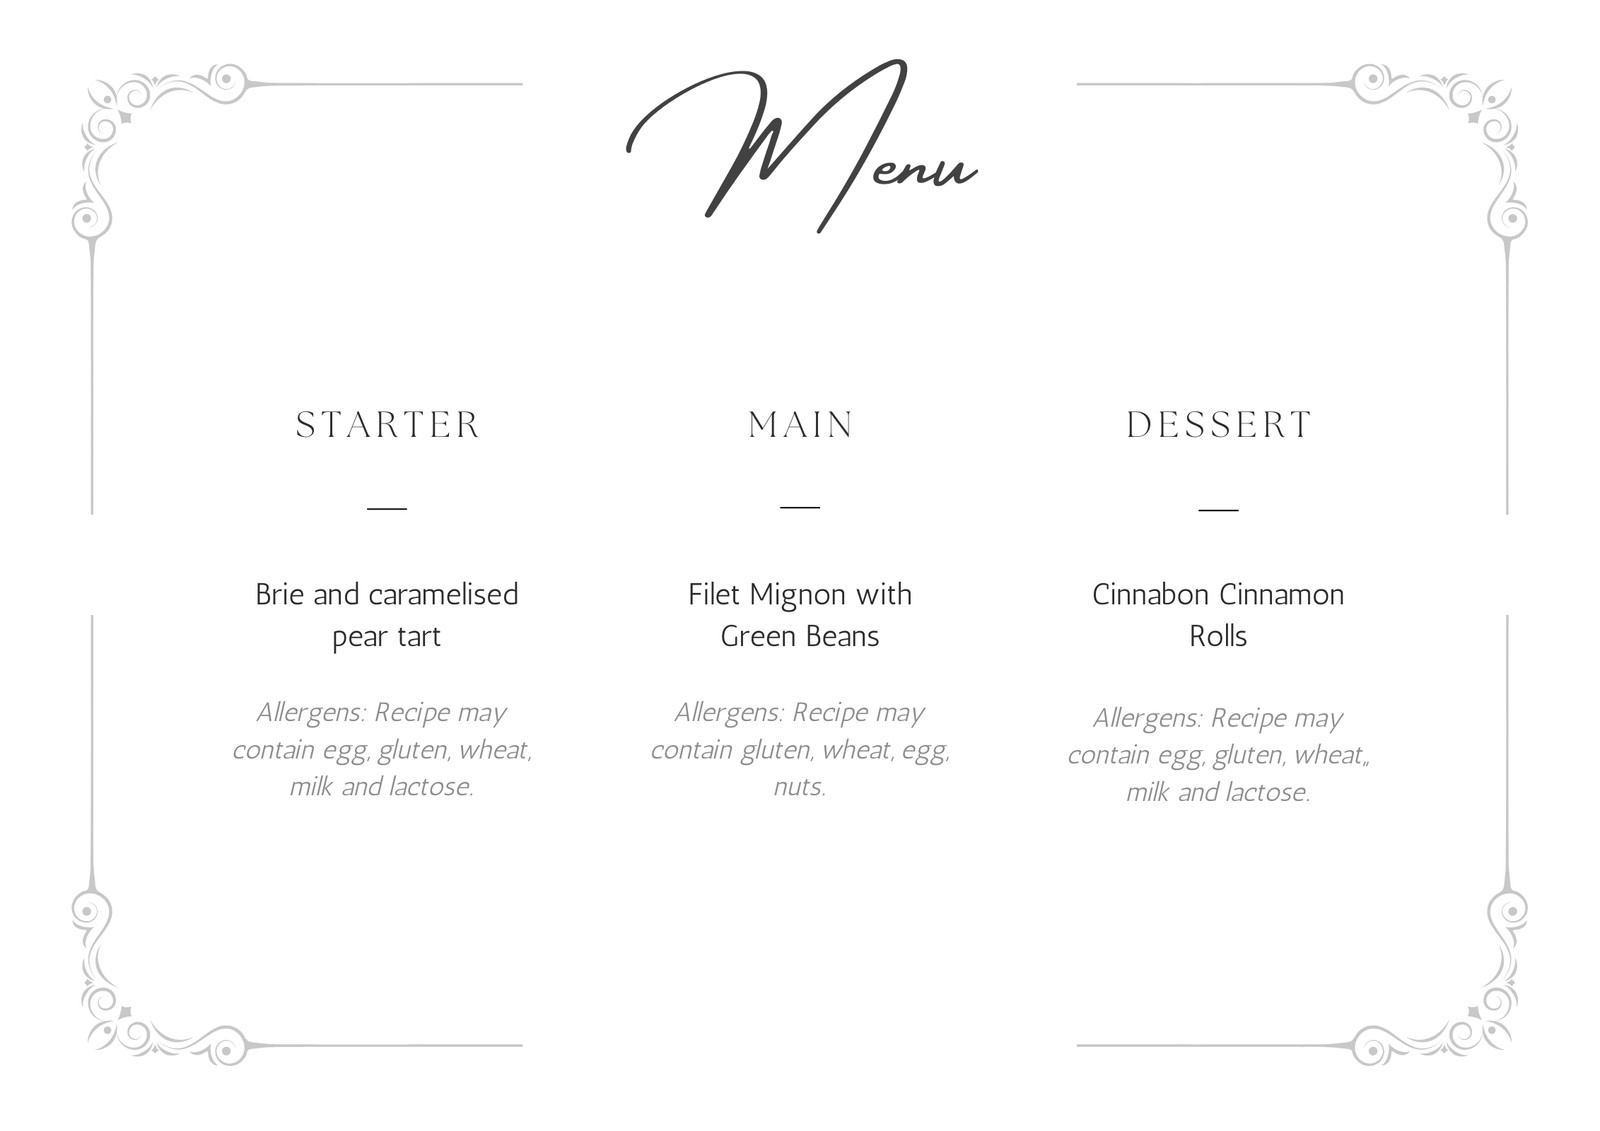 banquet menu design